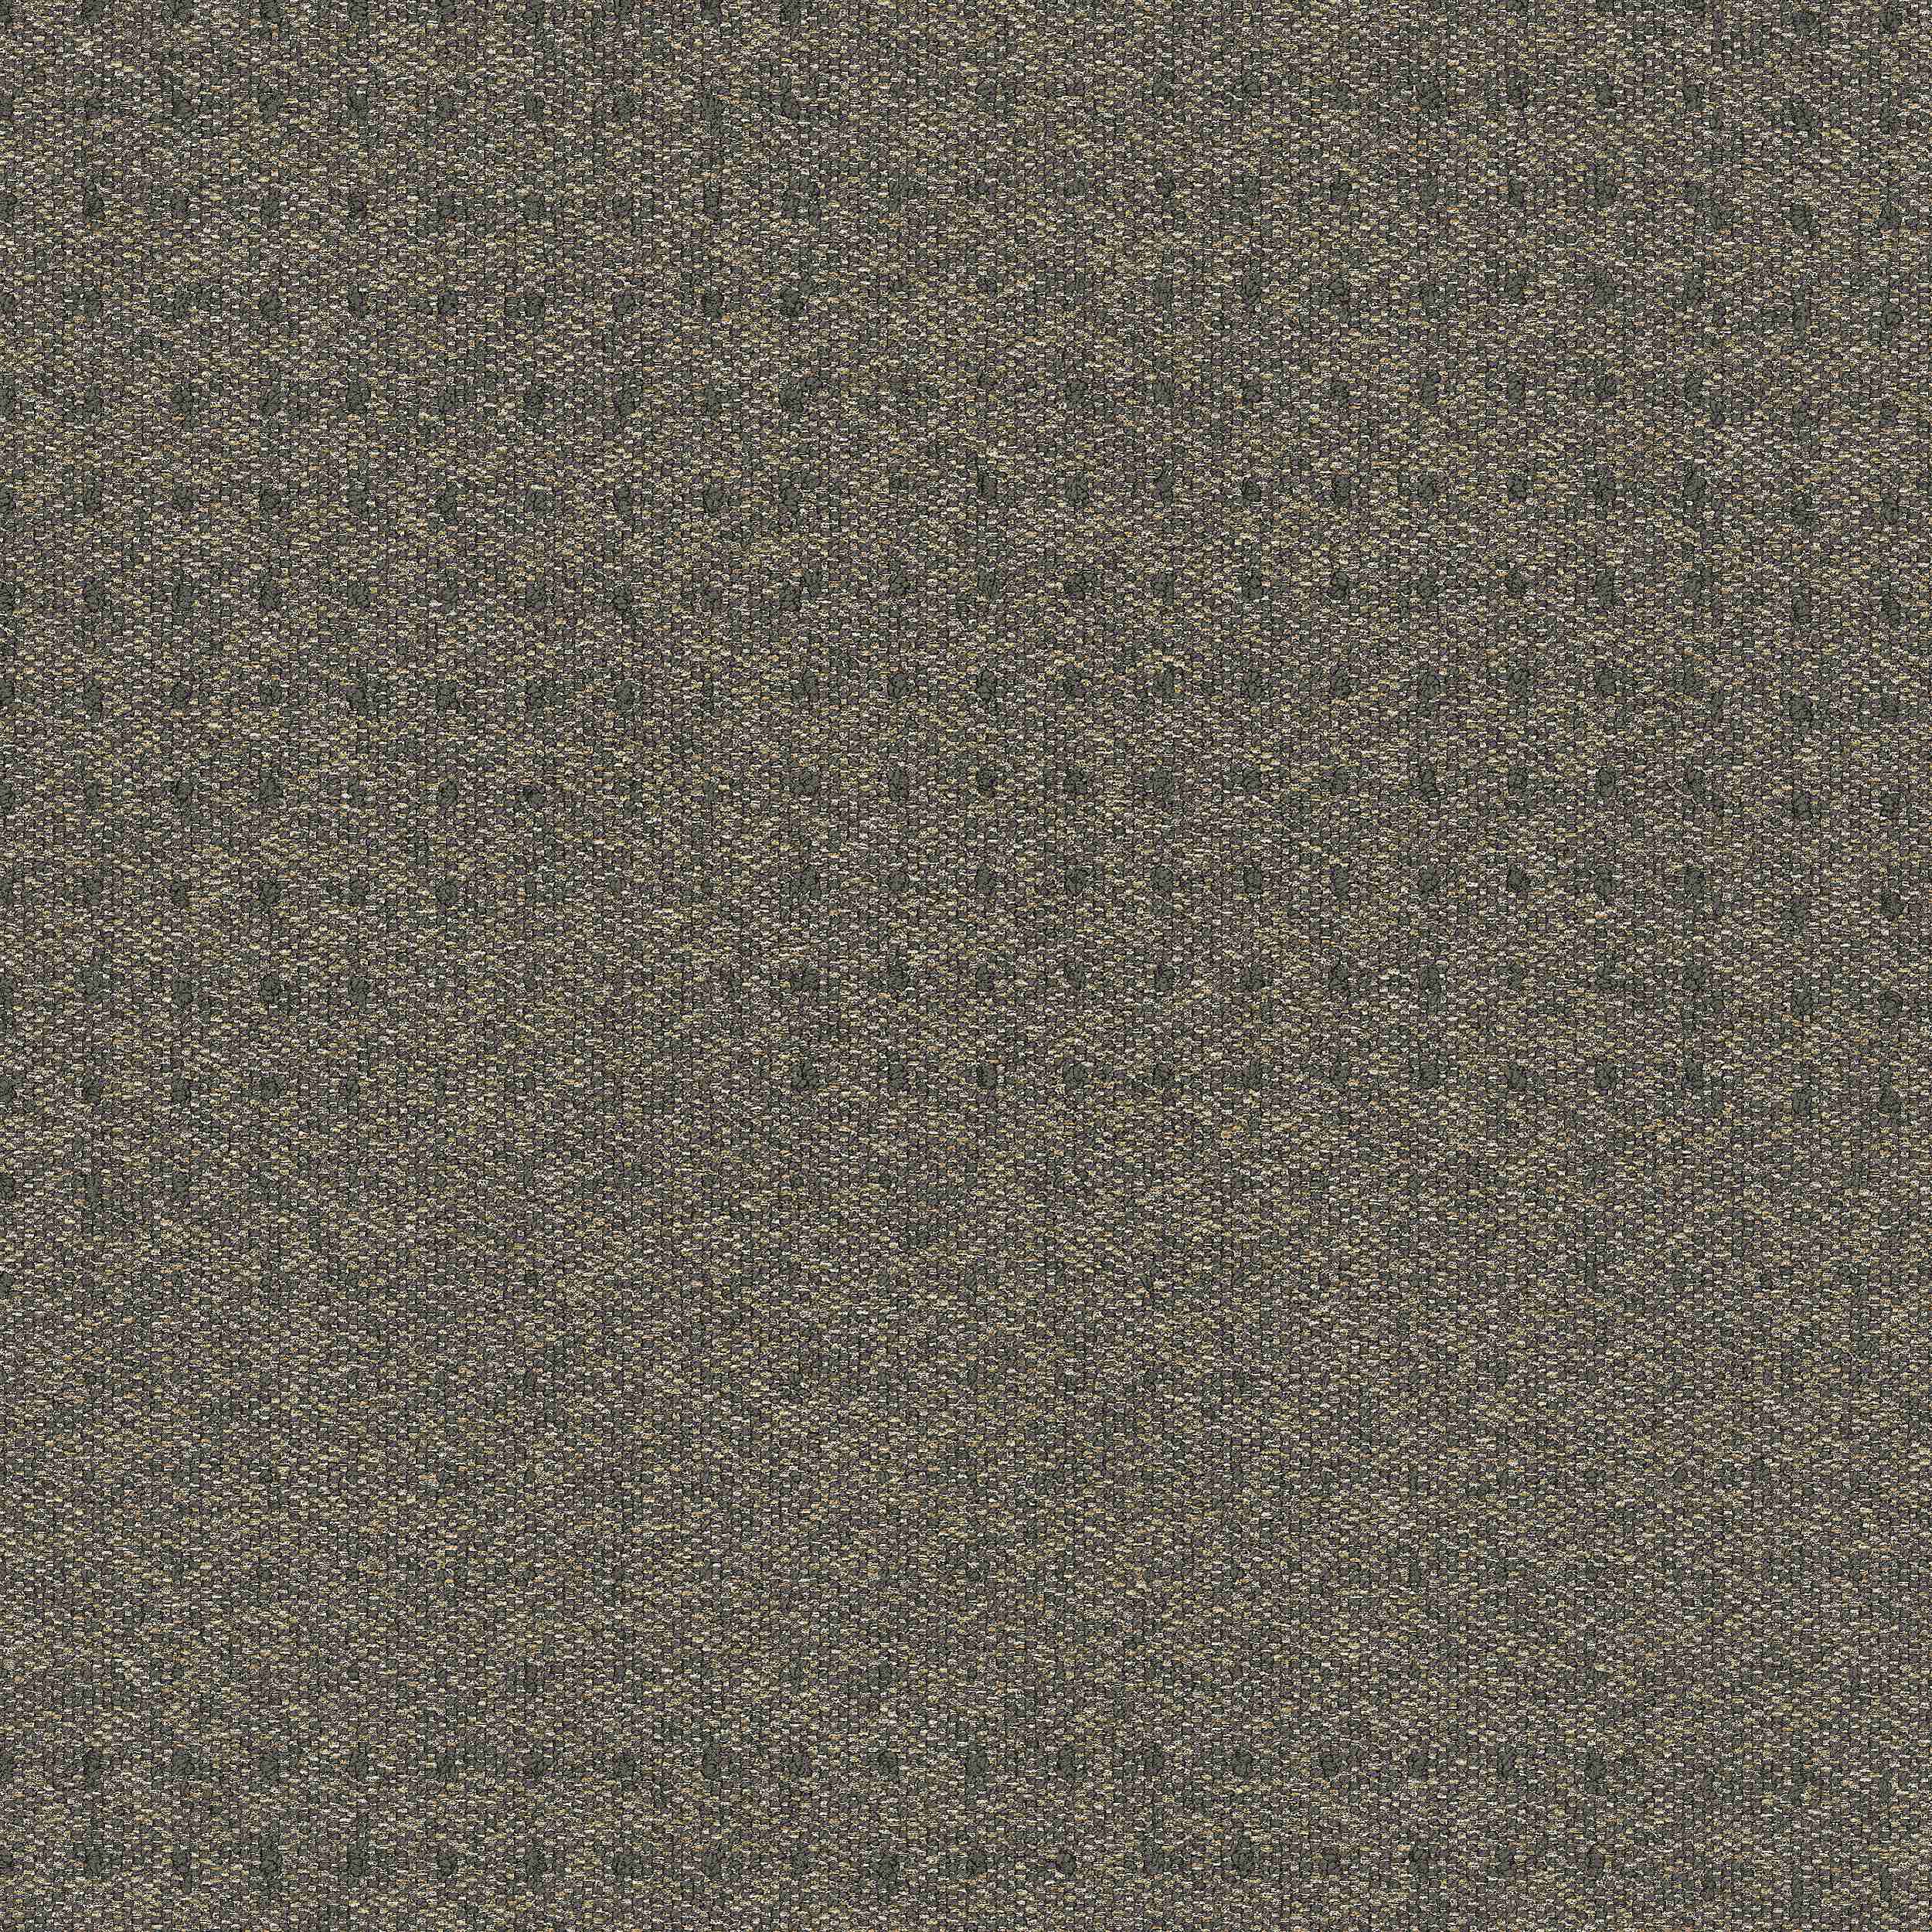 9444-001-000 Concrete Dot